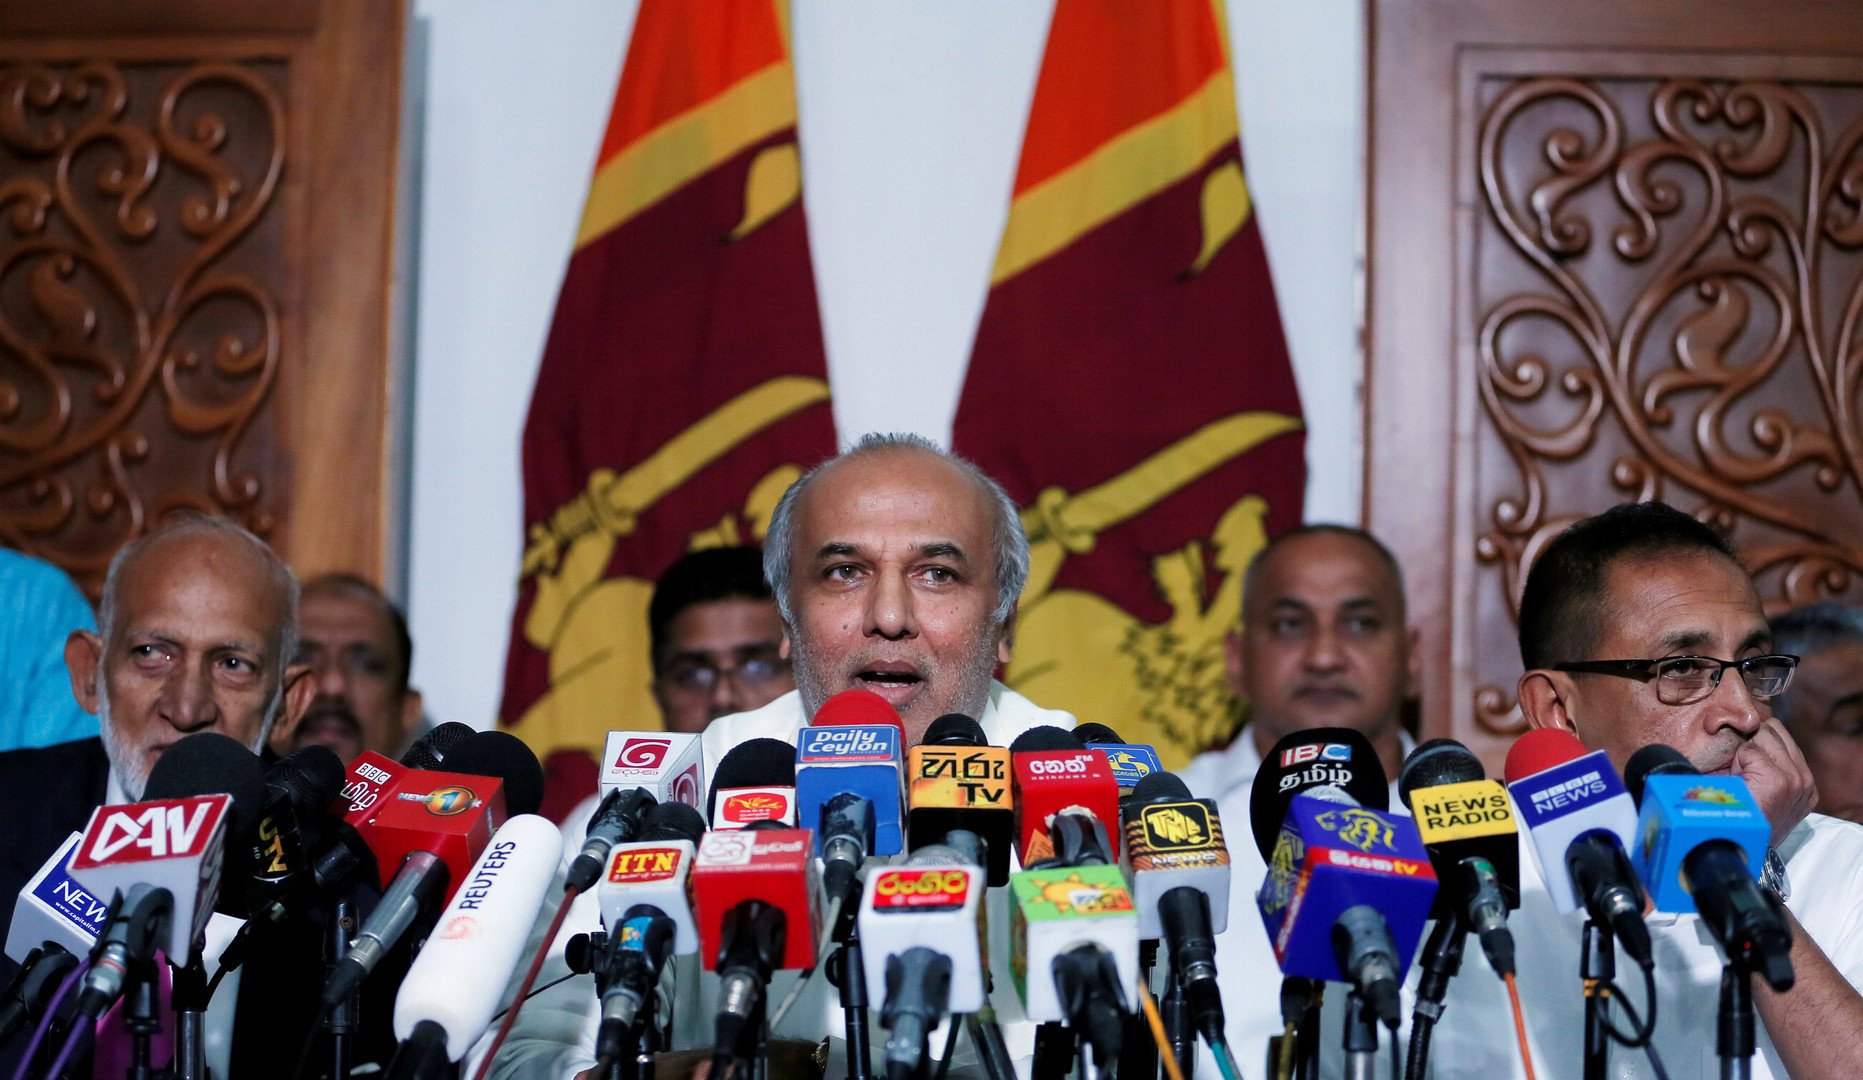 وزير الموارد المالية السريلانكي، رؤوف حكيم، يشرح أسباب استقالته ووزراء مسلمين آخرين في بيان صحفي